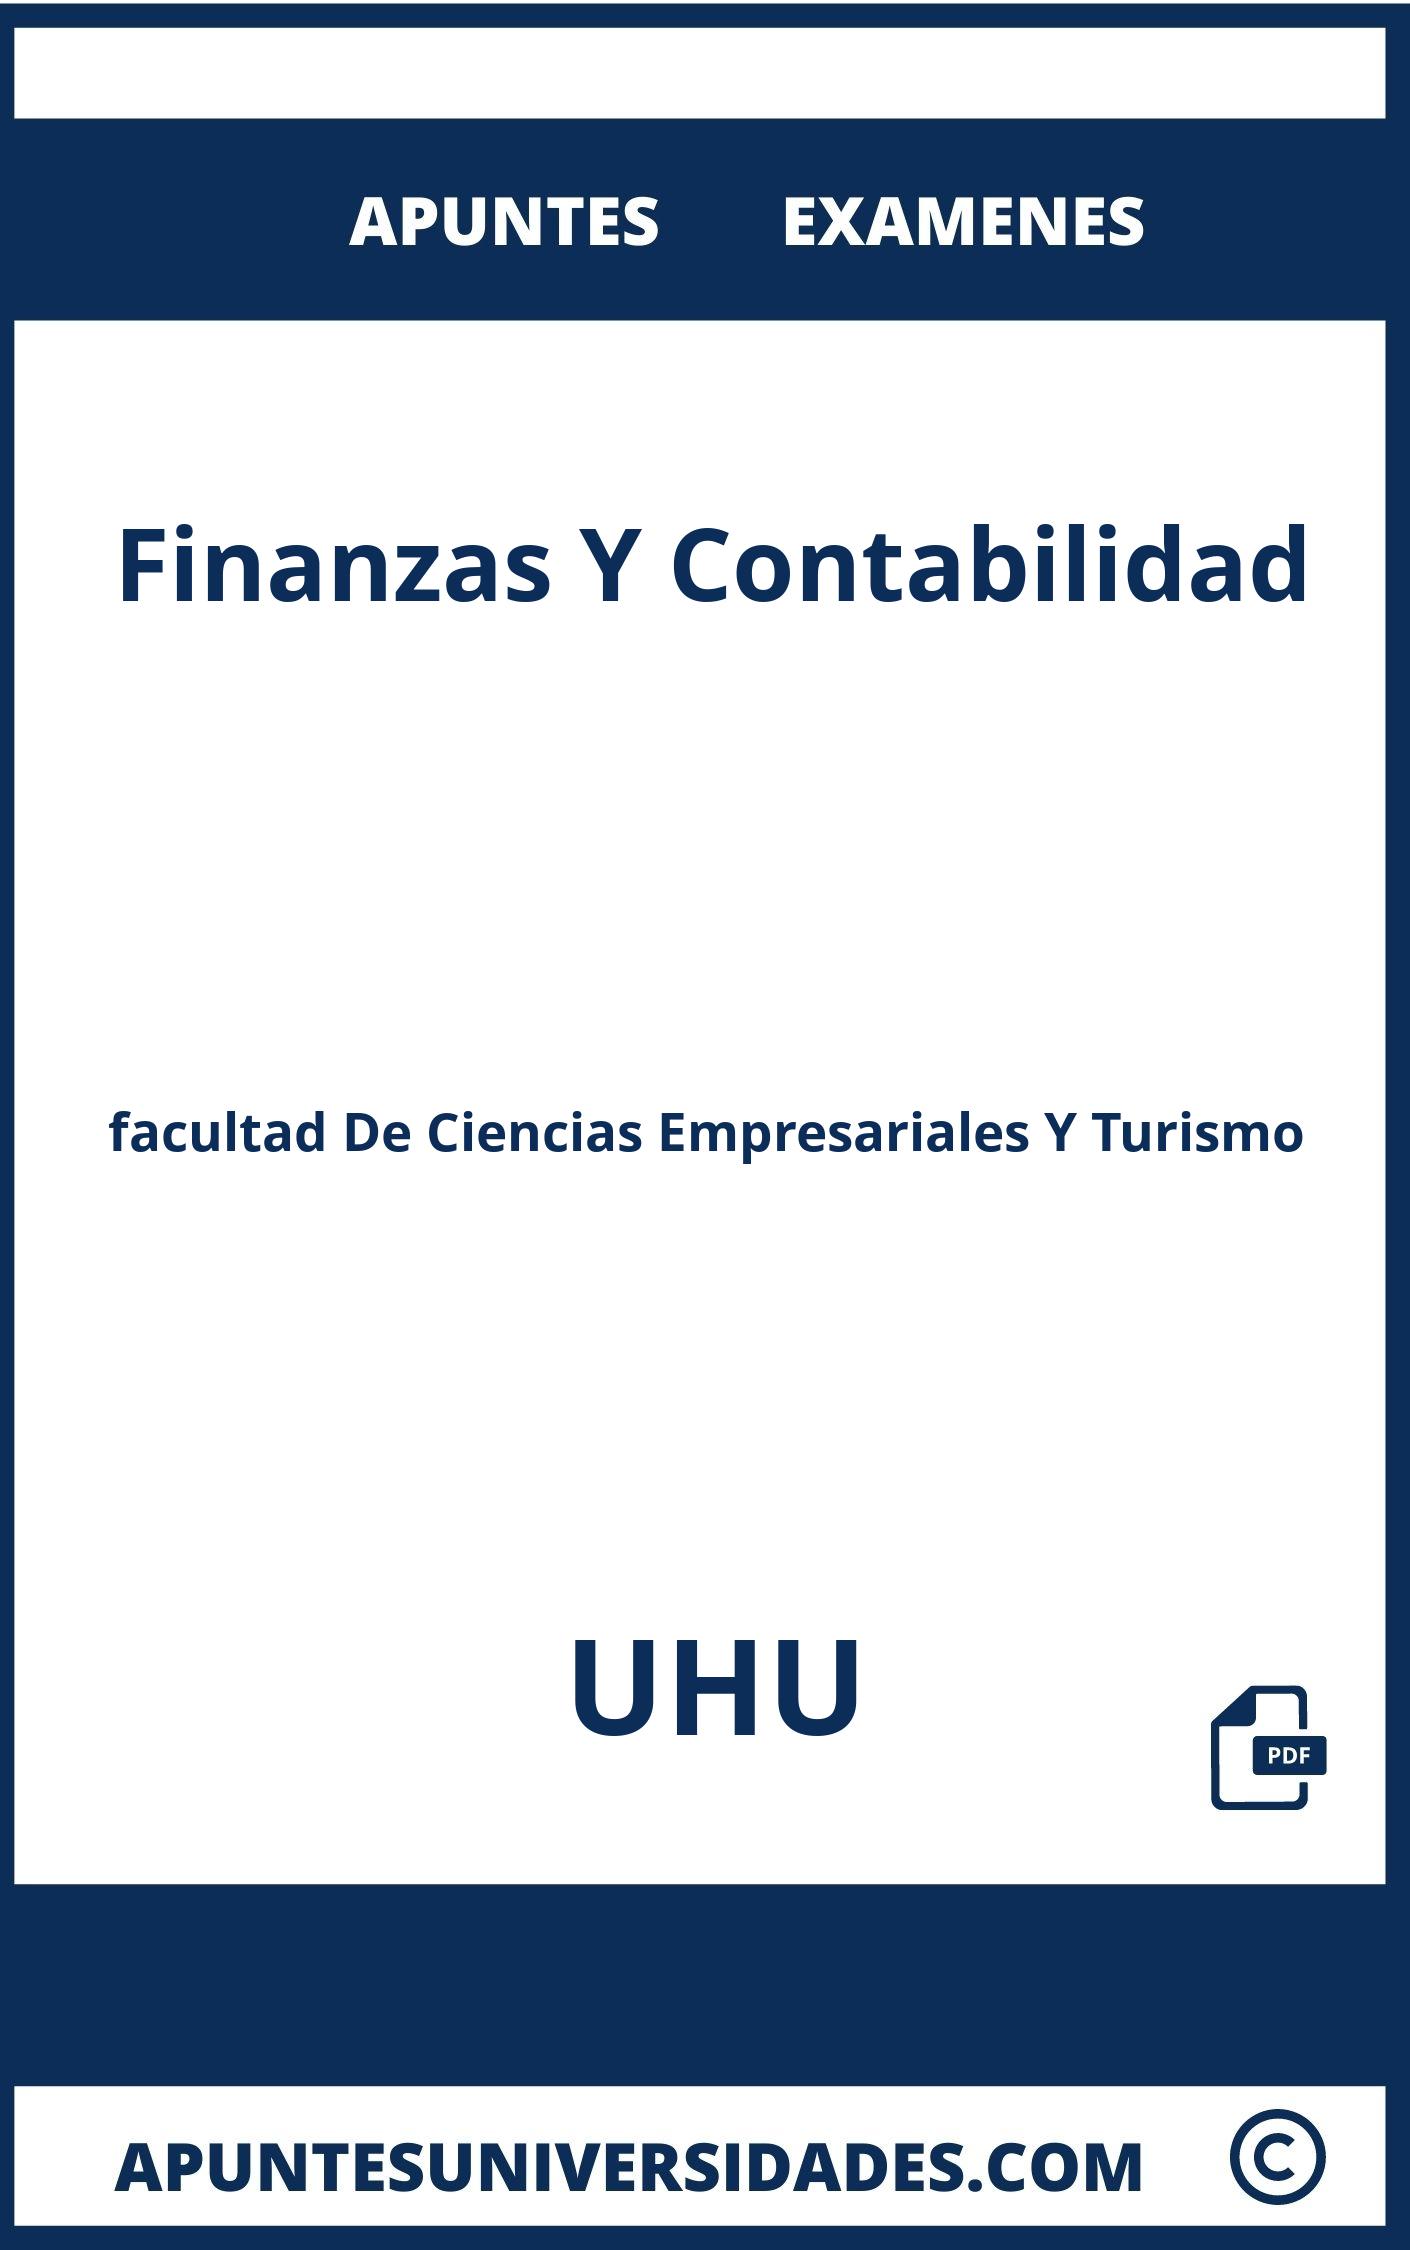 Apuntes y Examenes de Finanzas Y Contabilidad UHU